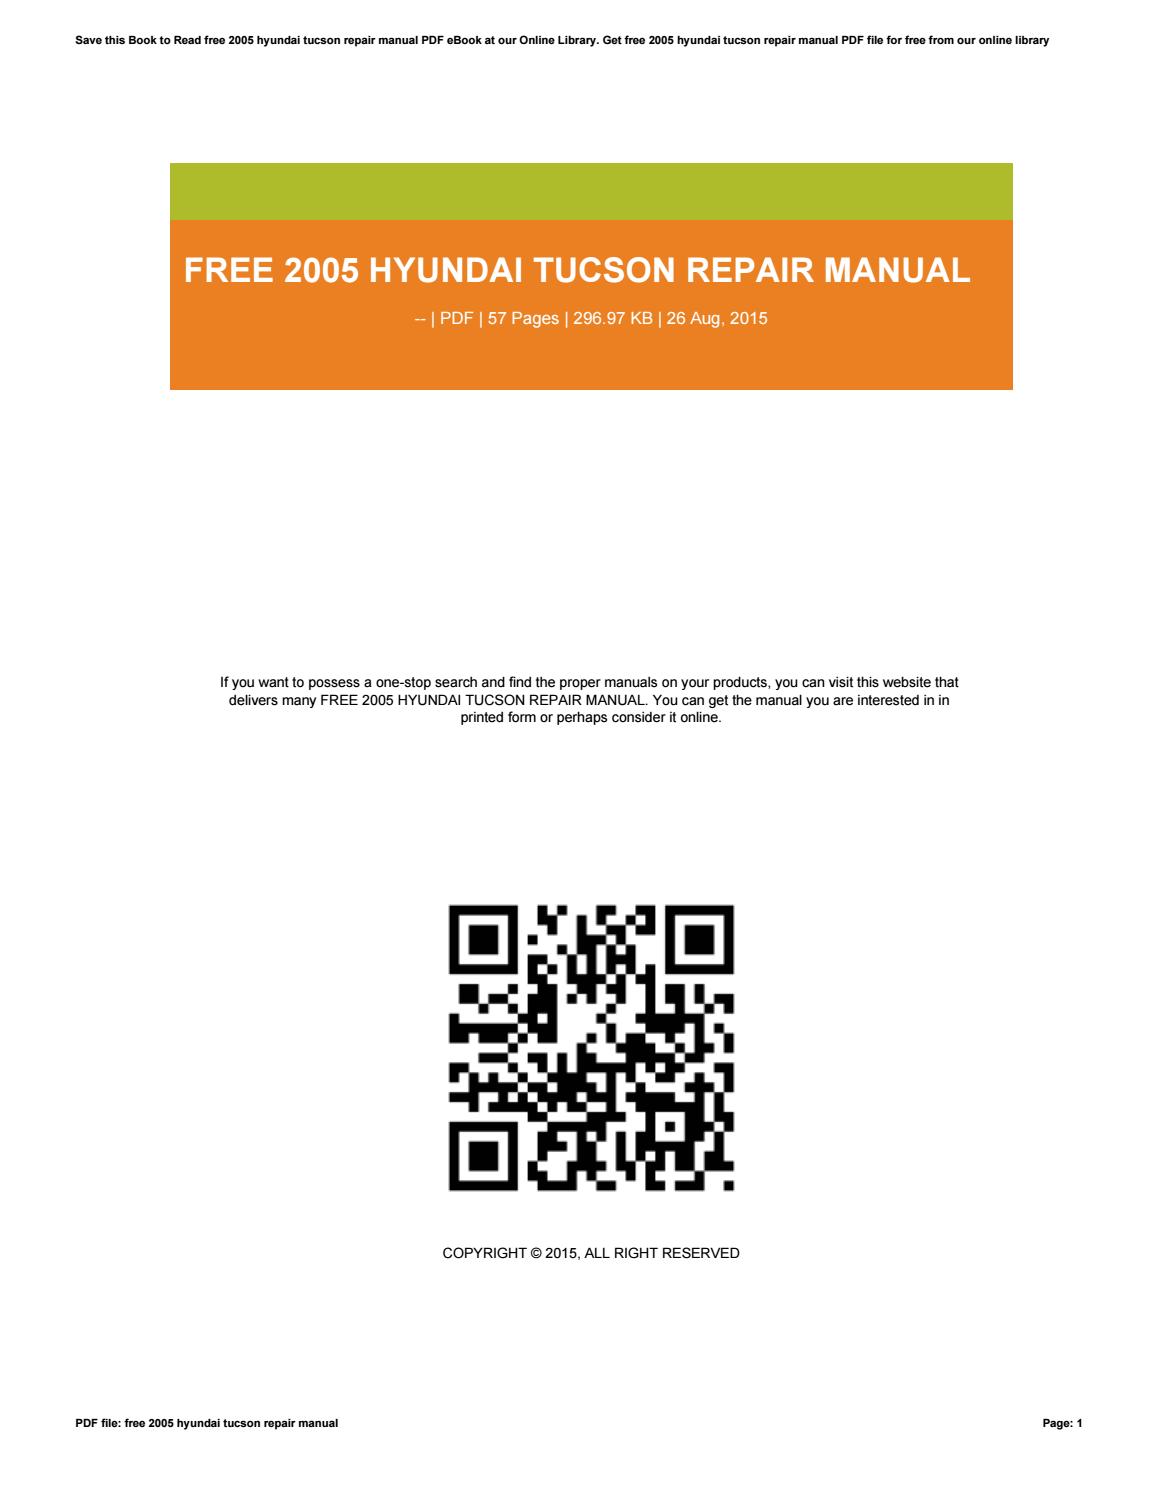 2006 hyundai tucson owners manual